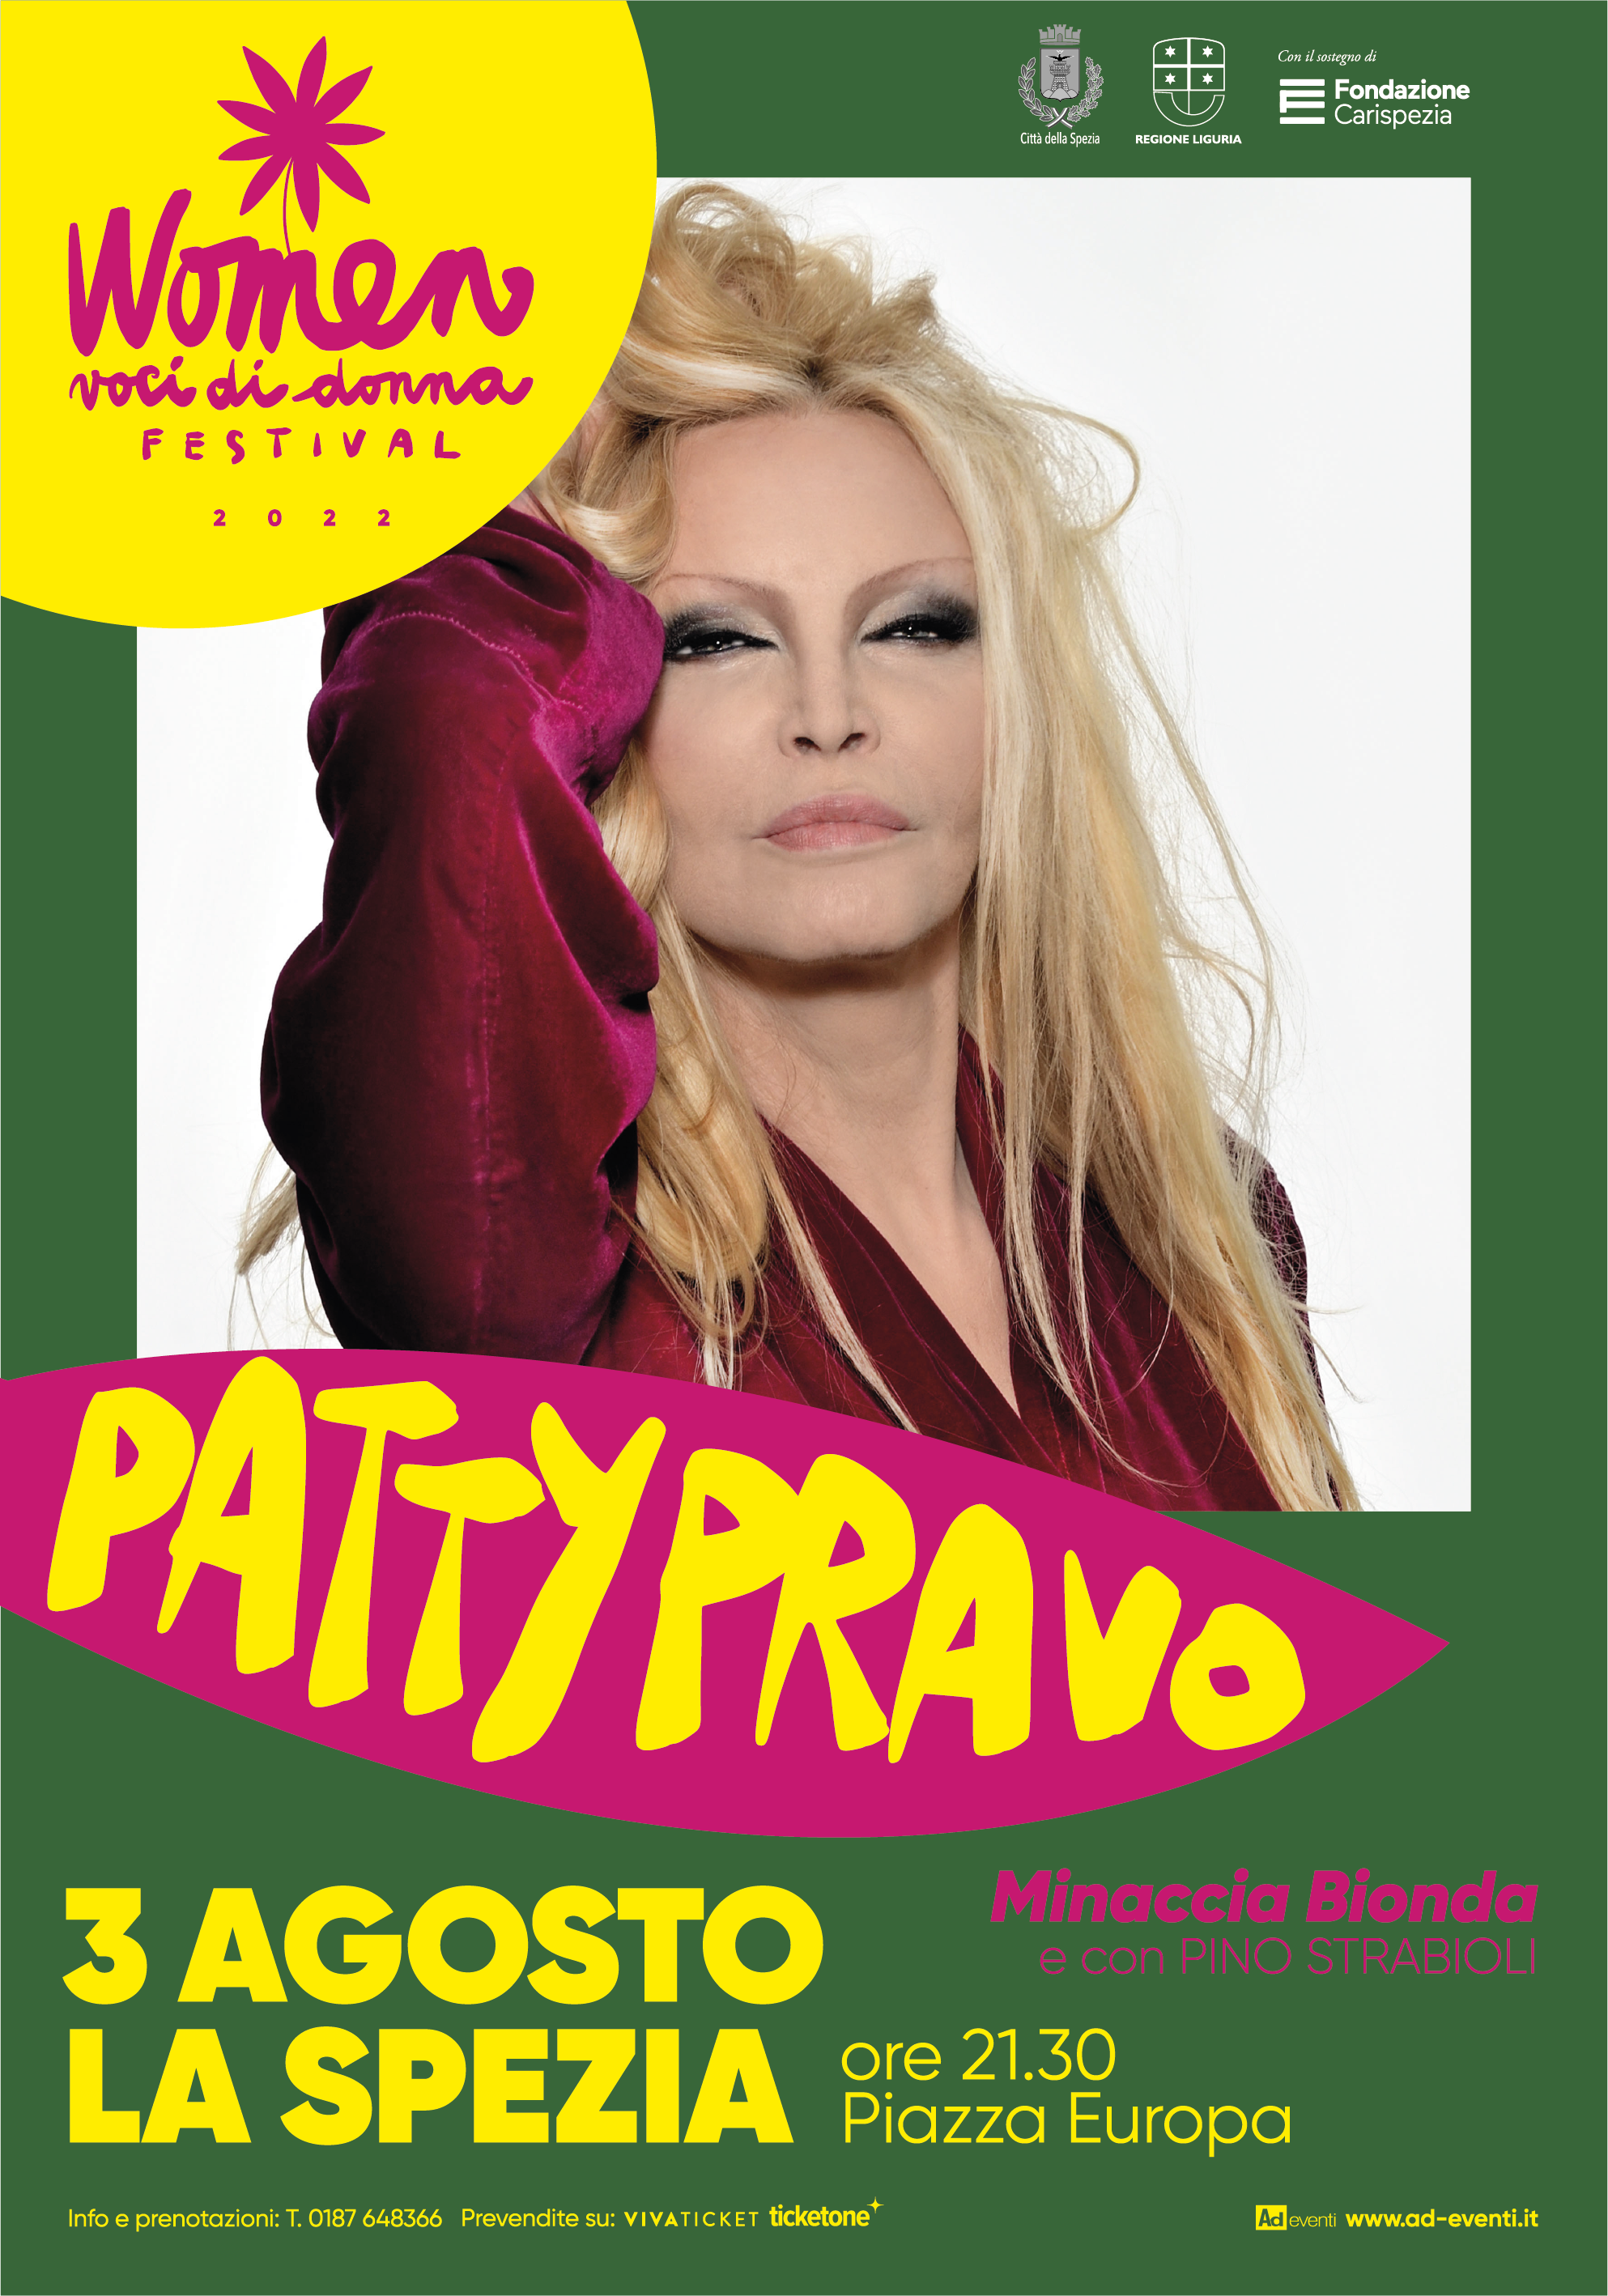 Patty Pravo in Minaccia Bionda Tour – P.zza Europa, La Spezia